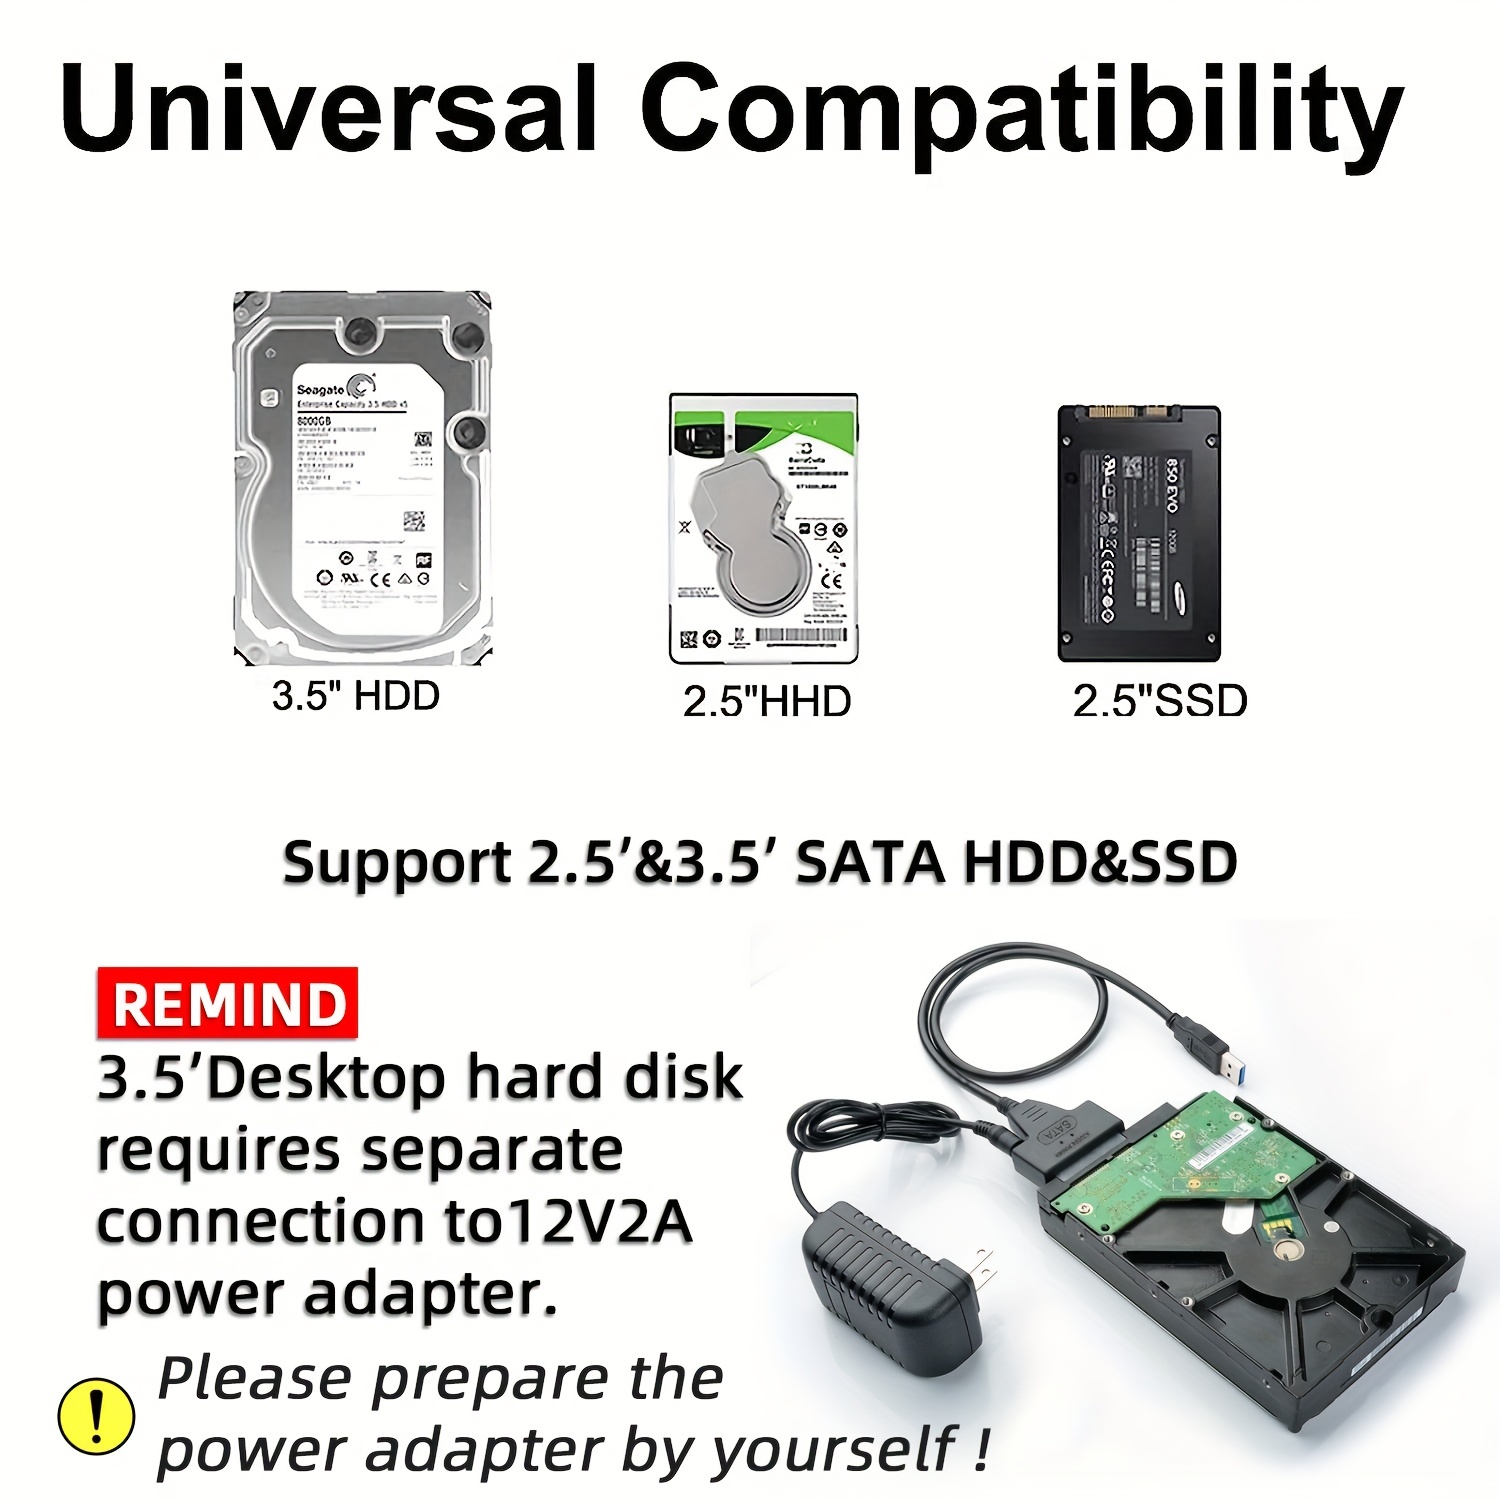 Adattatore USB 3.0 / SATA 2,5 per collegare il tuo hard disk al PC